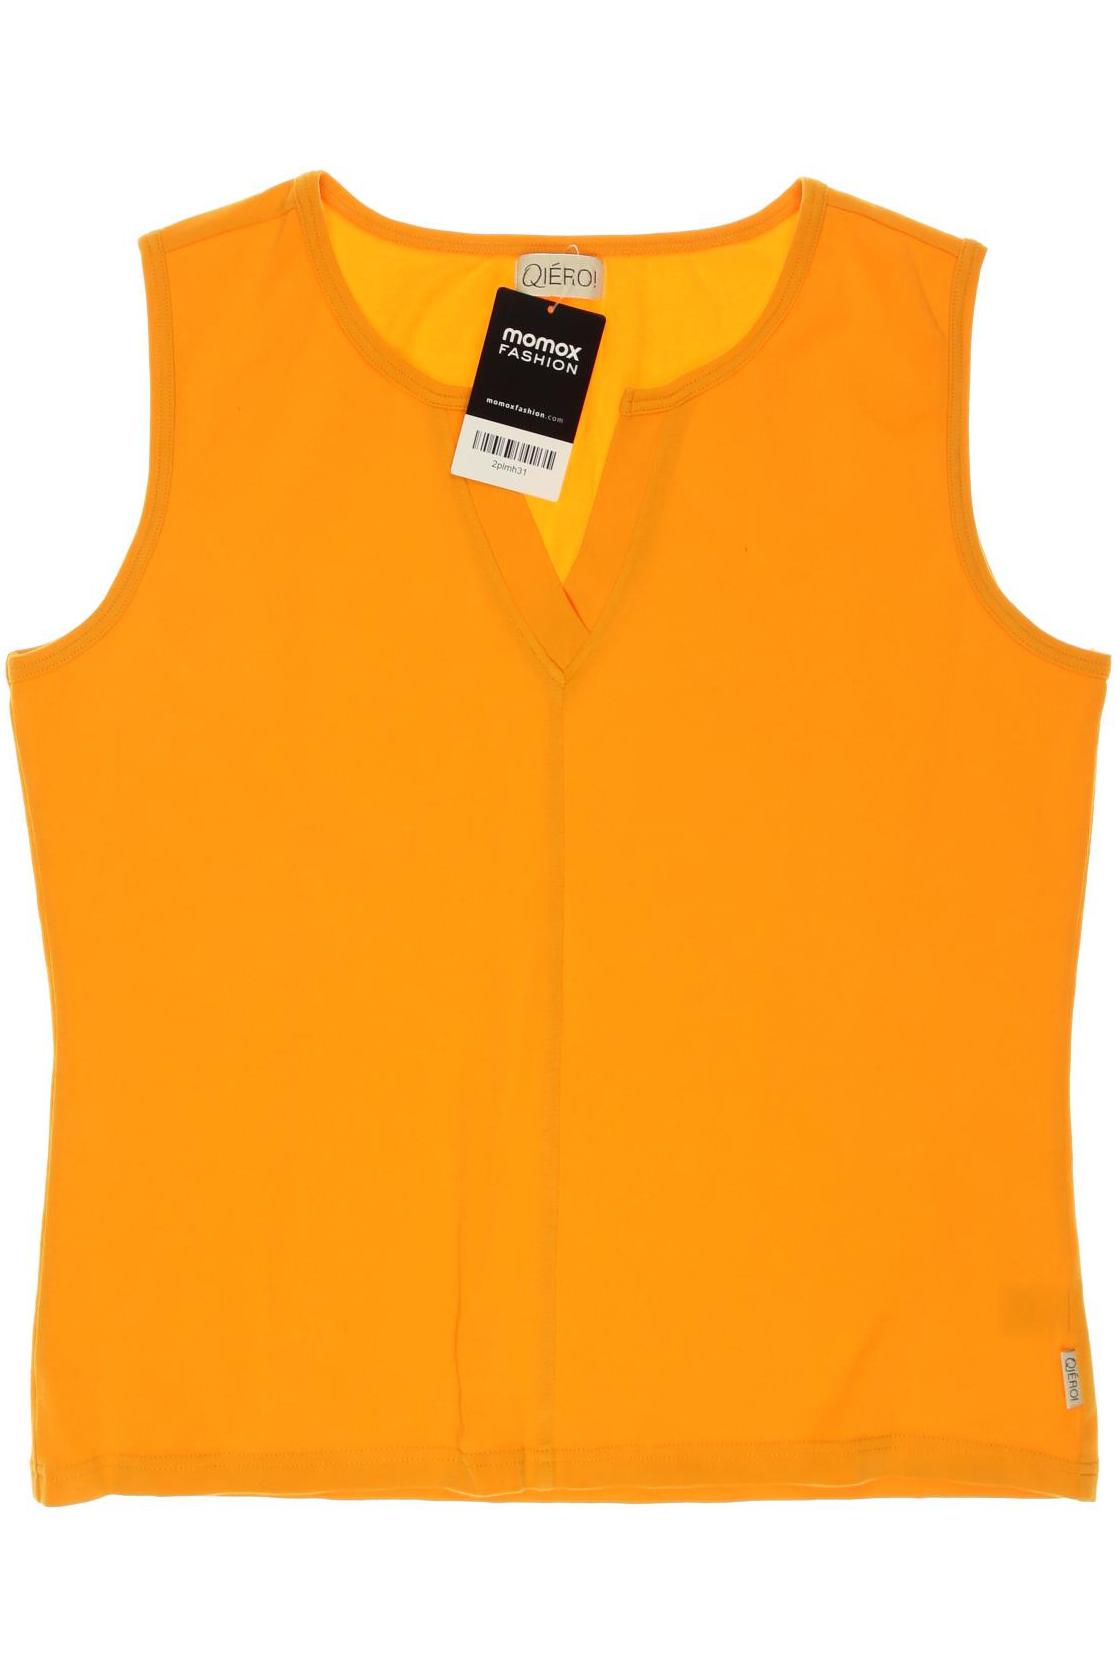 Qiero Damen T-Shirt, orange von Qiero